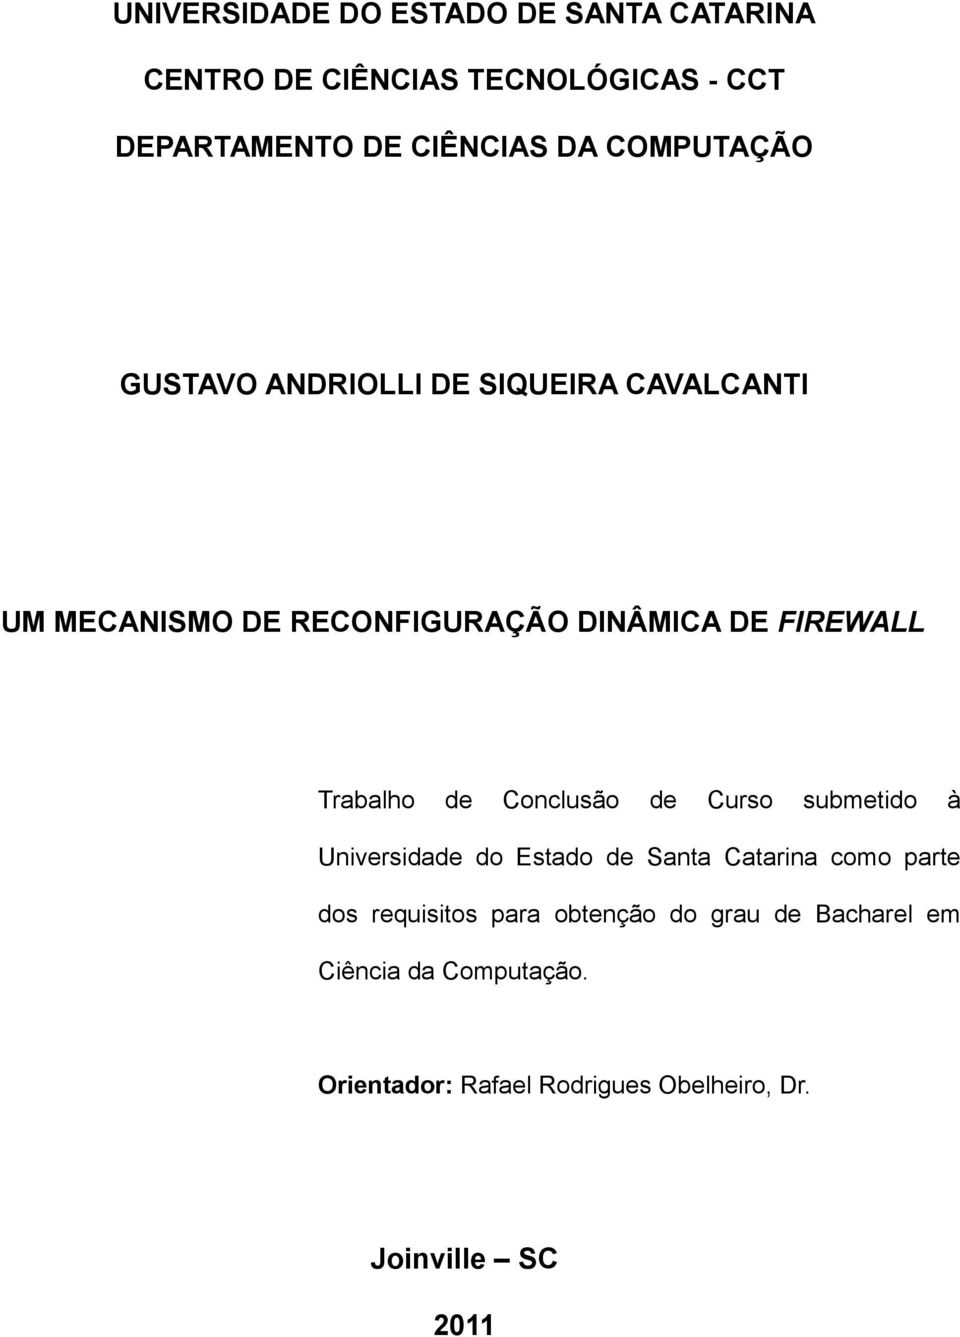 Trabalho de Conclusão de Curso submetido à Universidade do Estado de Santa Catarina como parte dos requisitos